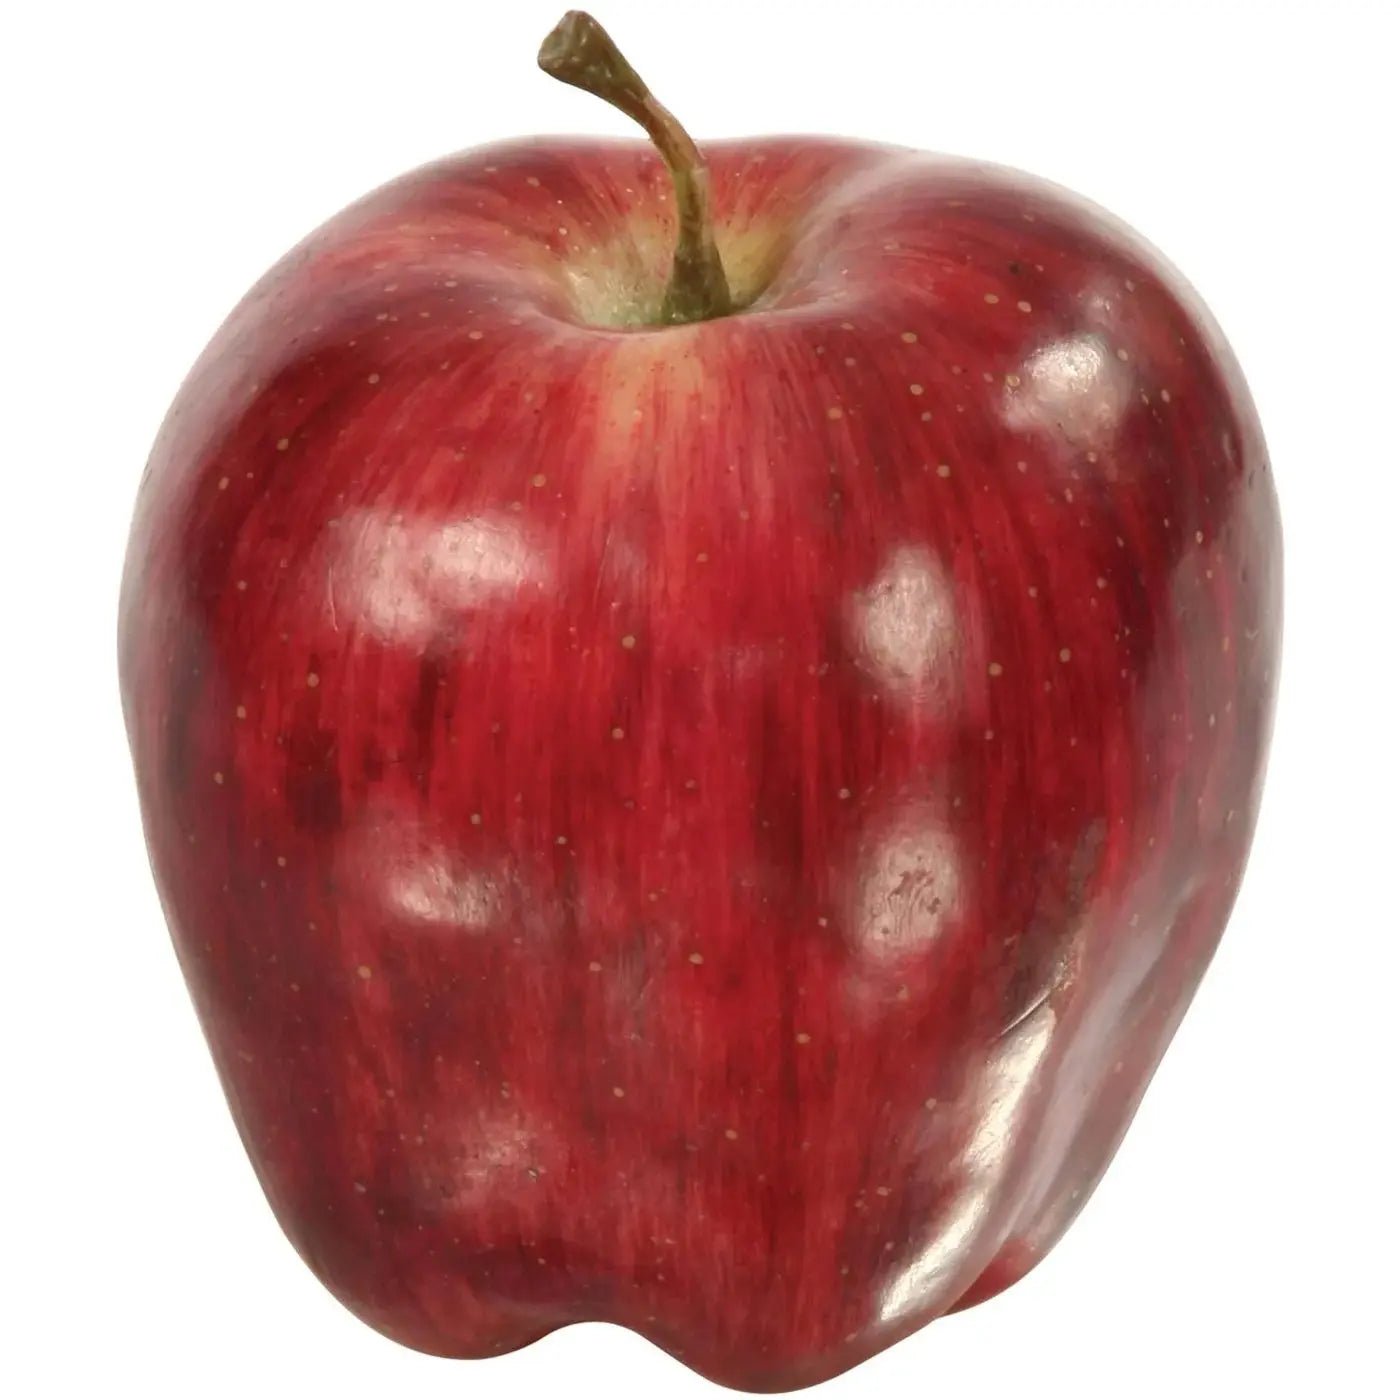 Winward Red Delicious Apple